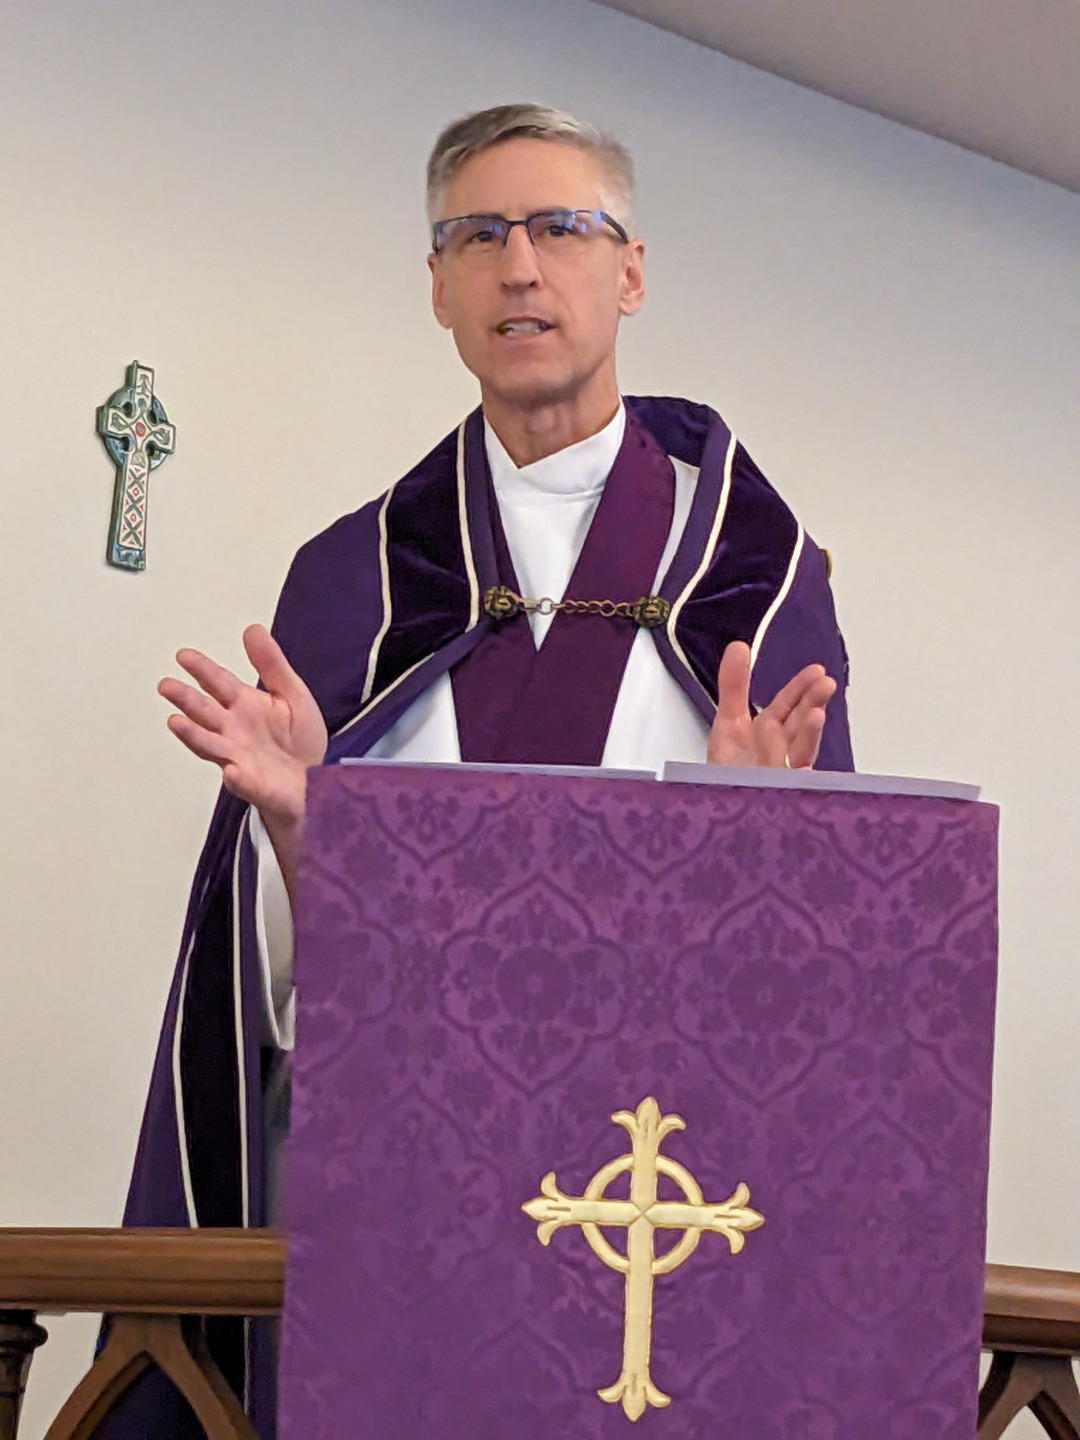 The Rev. Mark Brooks, Curate in Purple Cloak